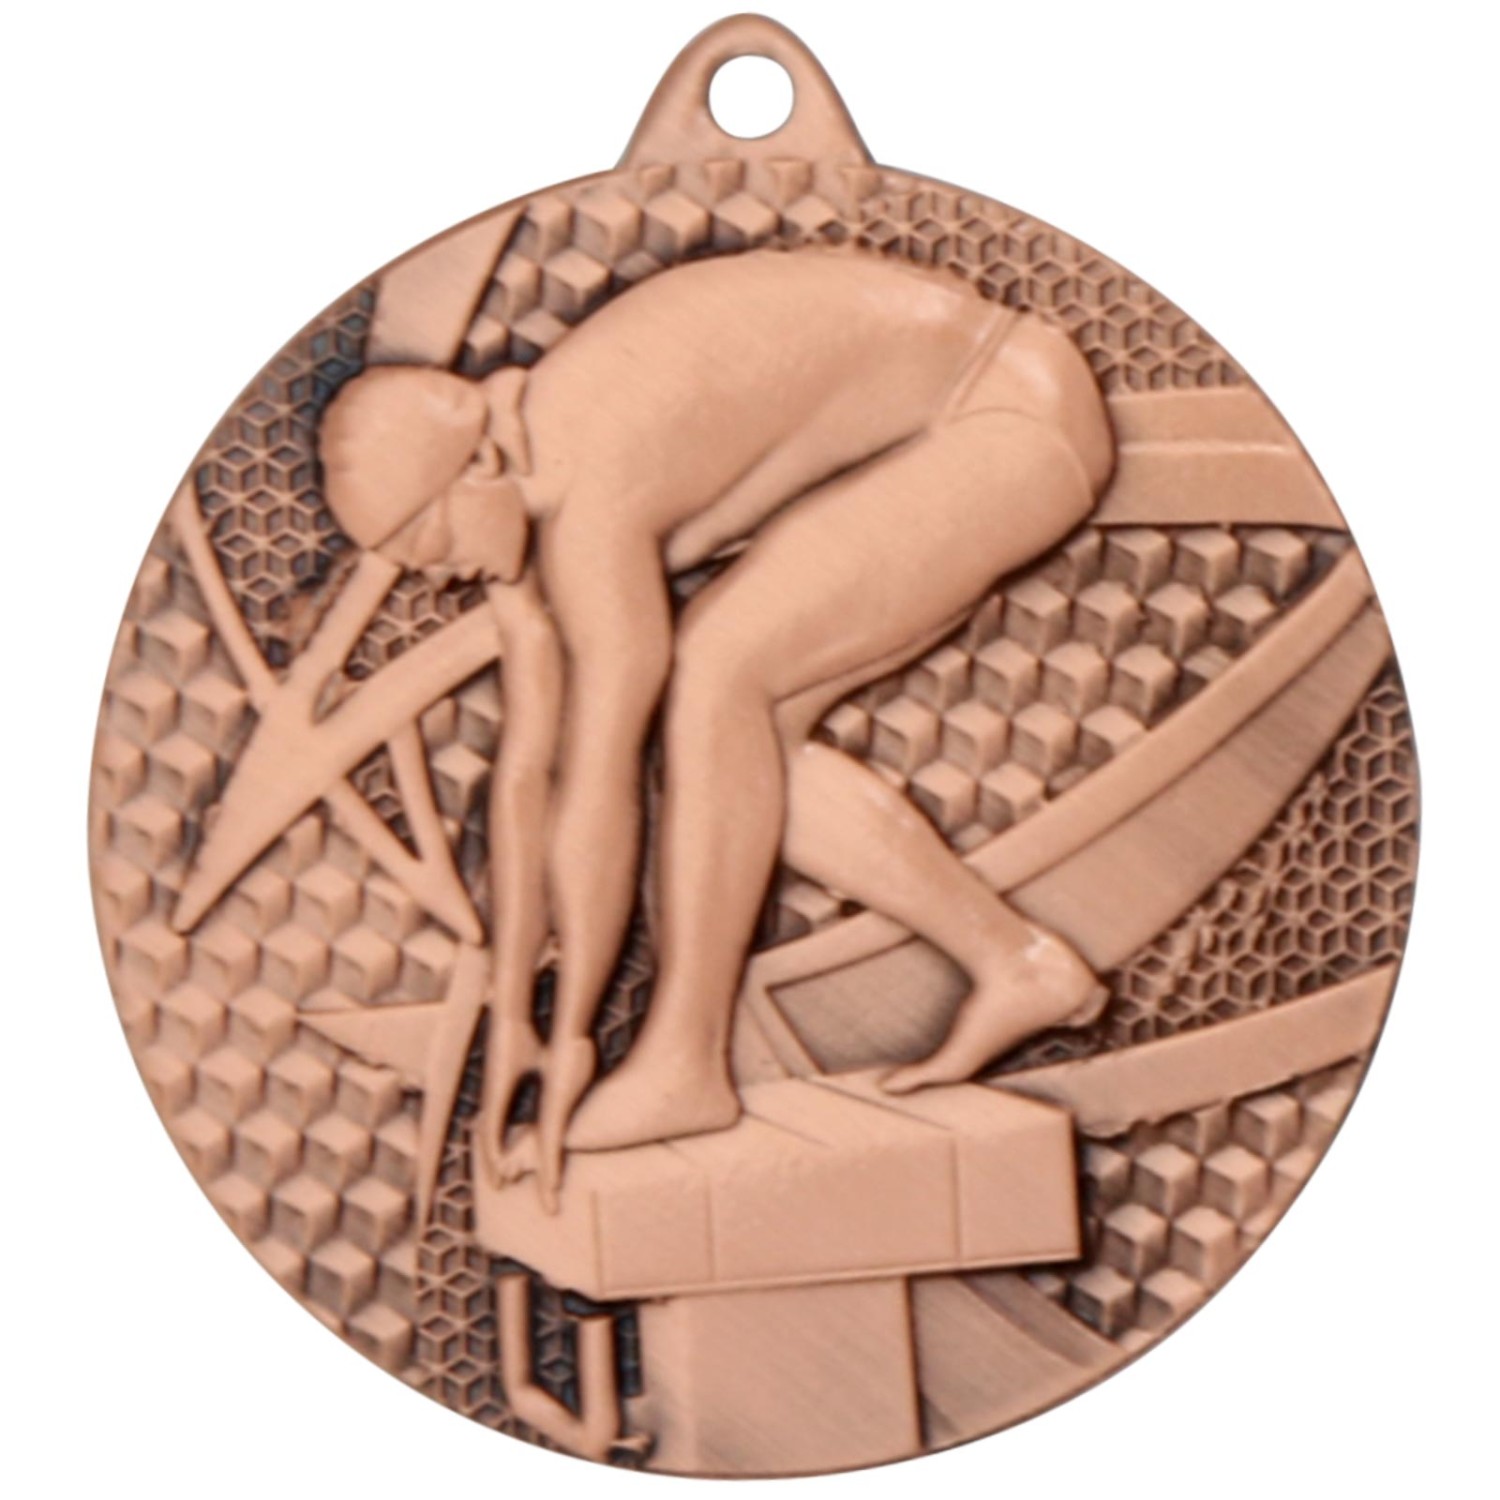 3. Foto Medaille Schwimmen 1 Medaillen rund gold silber bronze Set (Sorte: Set je 1x gold / silber / bronze)